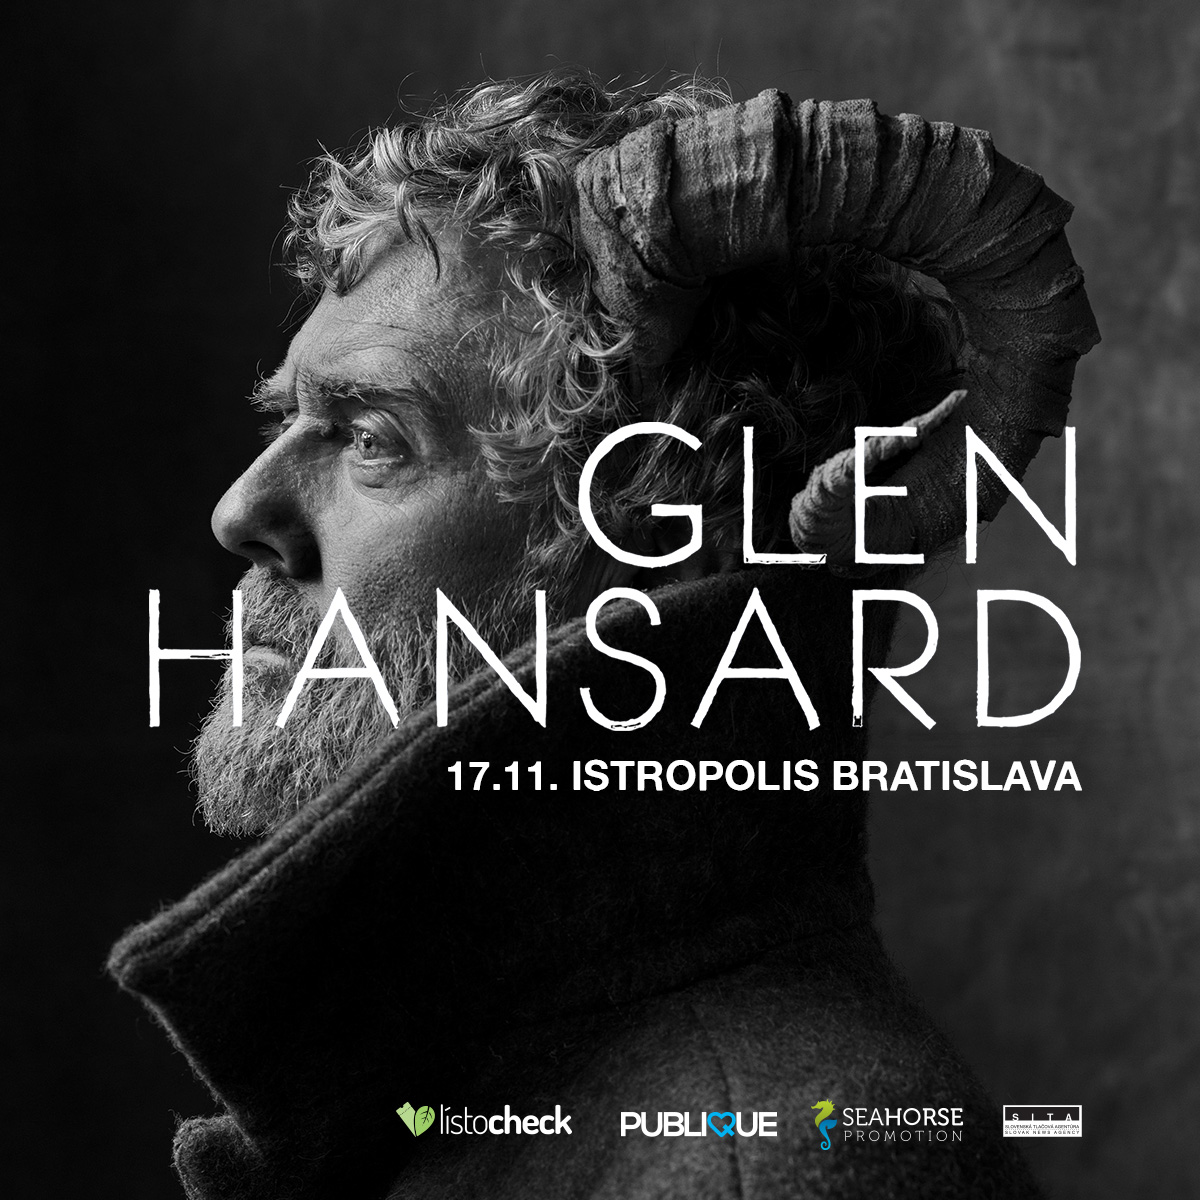 Glen Hansard vystúpi v Bratislave v deň výročia nežnej revolúcie